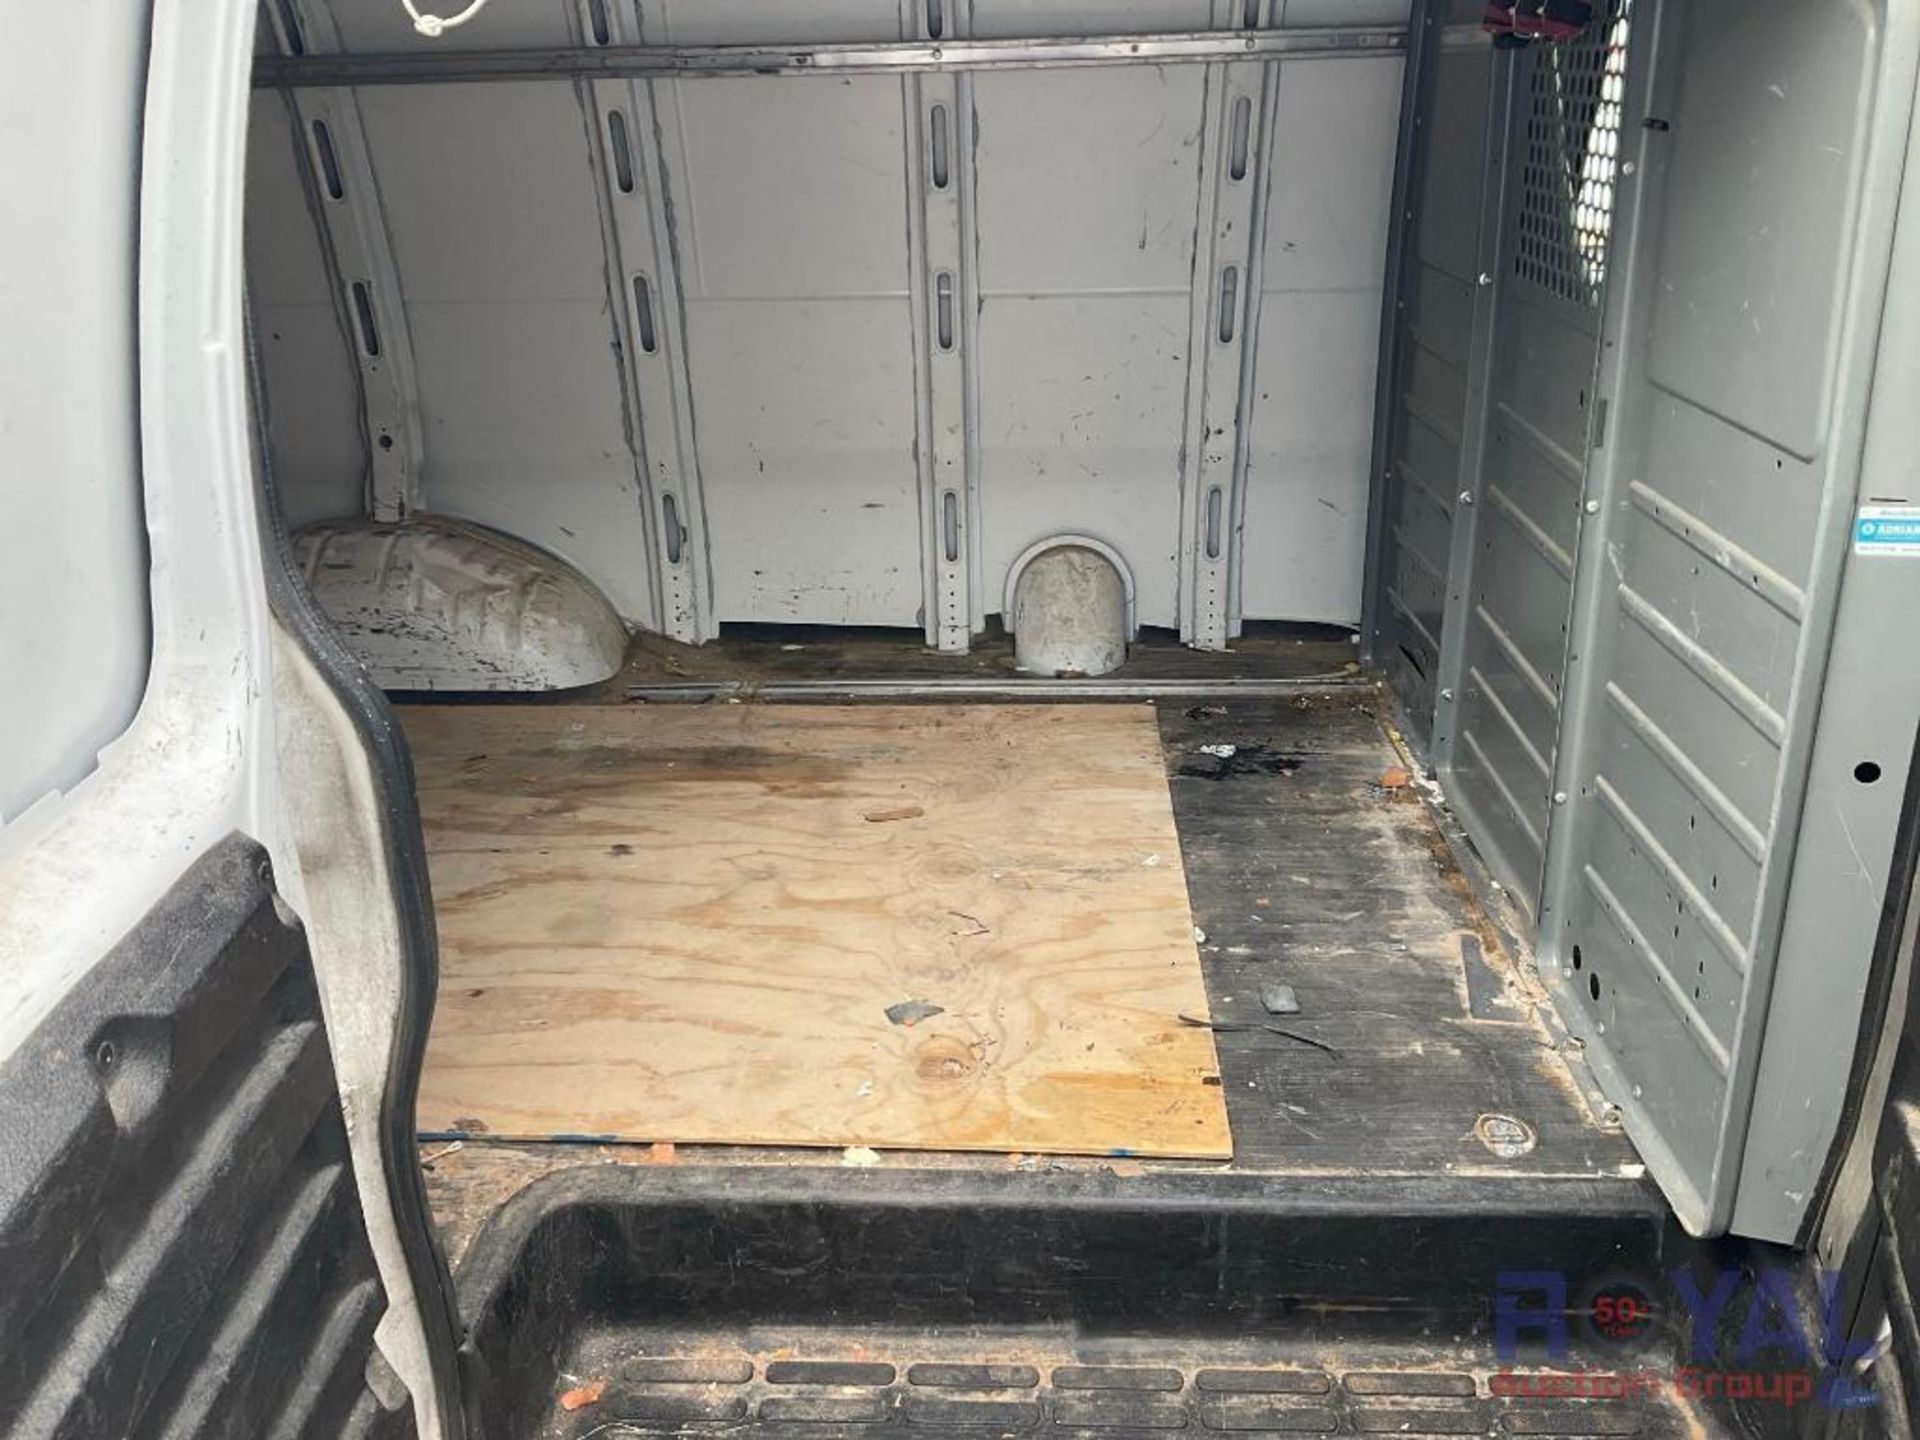 2014 Chevrolet Express Cargo Van - Image 25 of 33